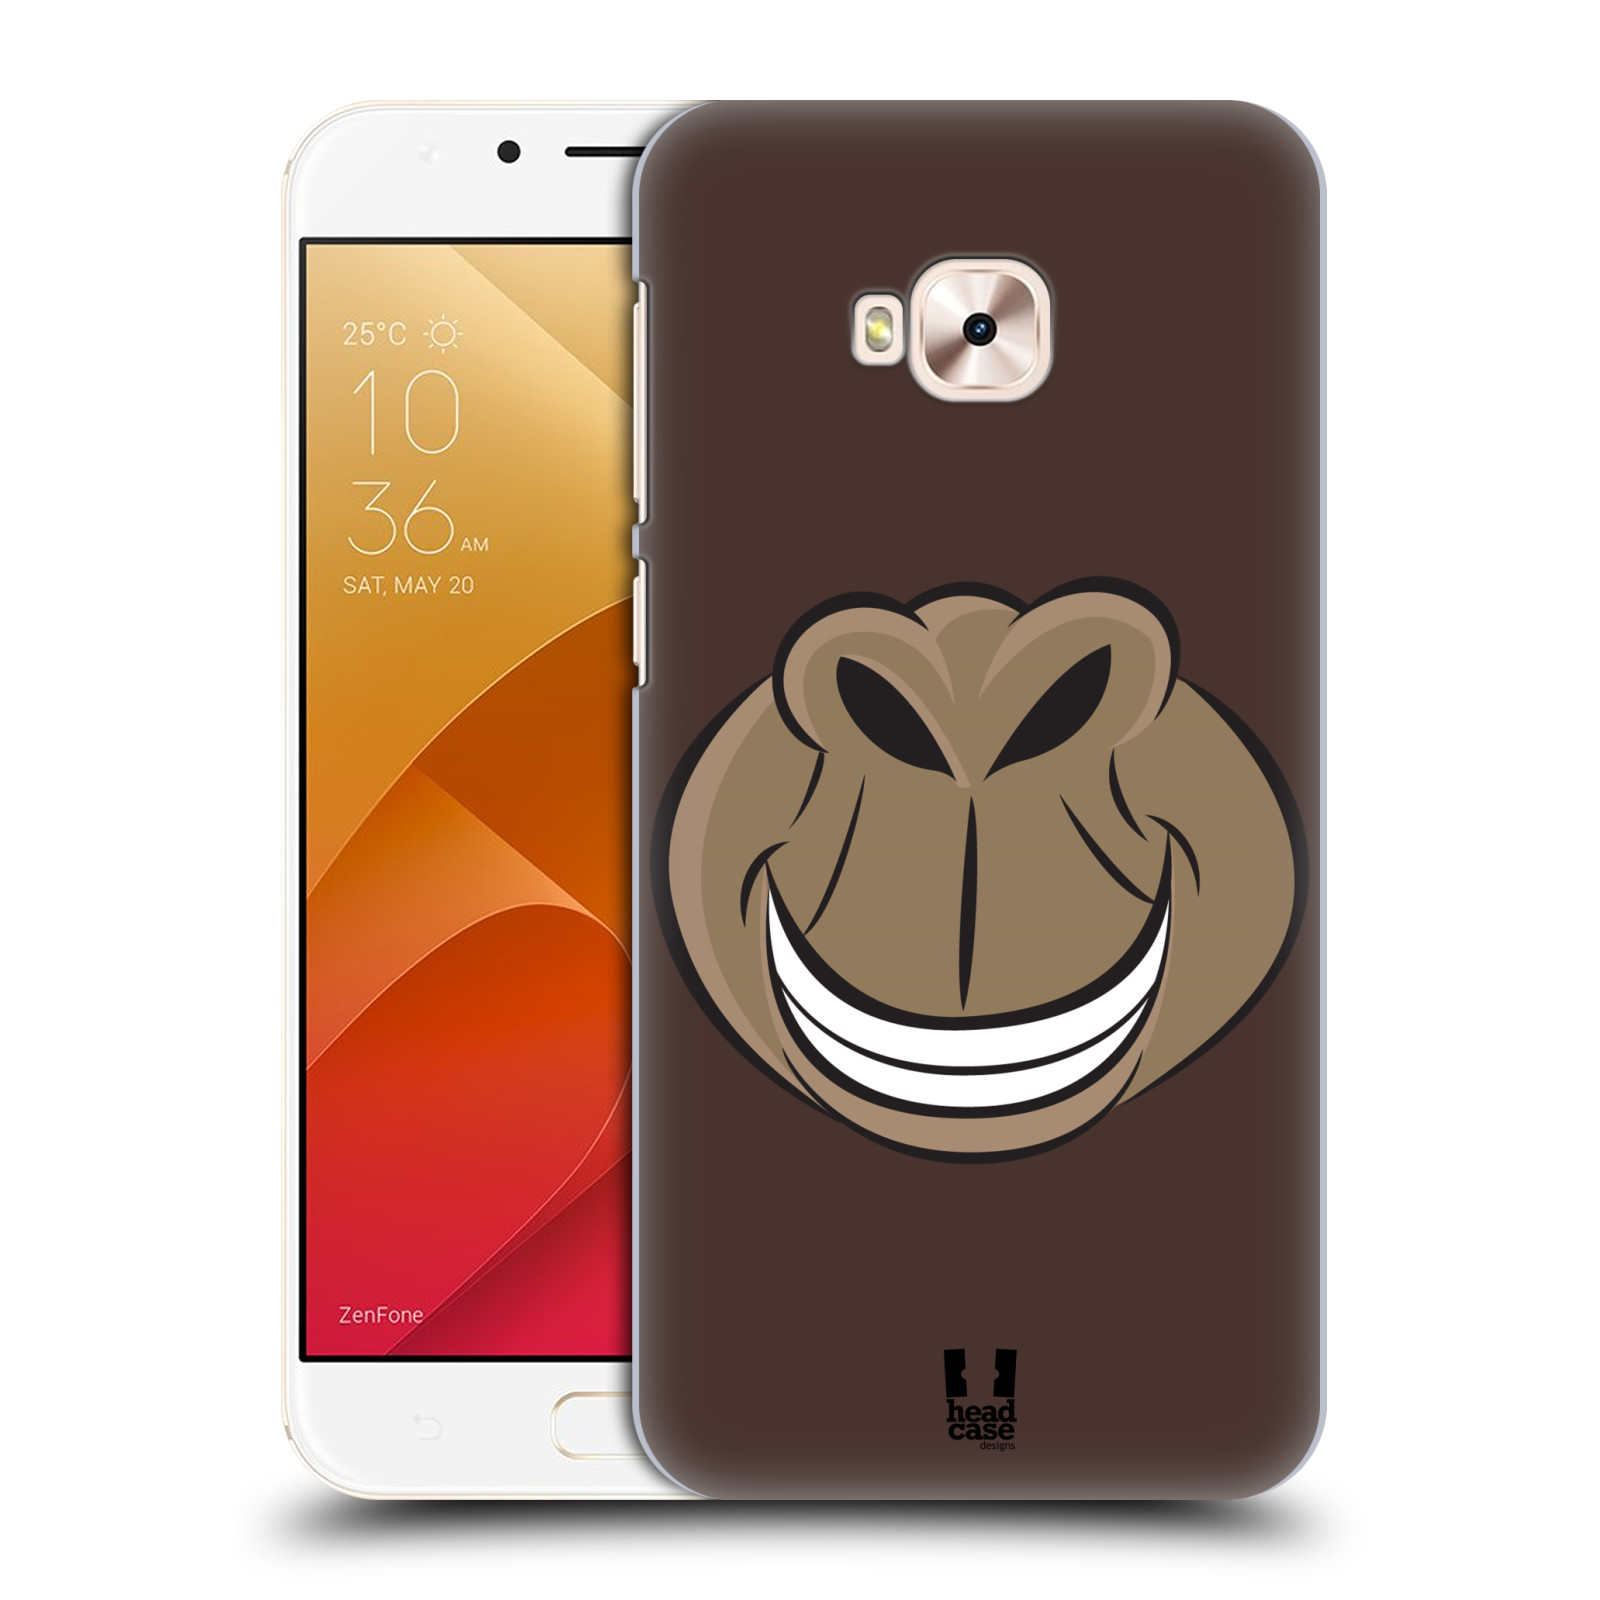 HEAD CASE plastový obal na mobil Asus Zenfone 4 Selfie Pro ZD552KL vzor Zvířecí úsměv opice hnědá